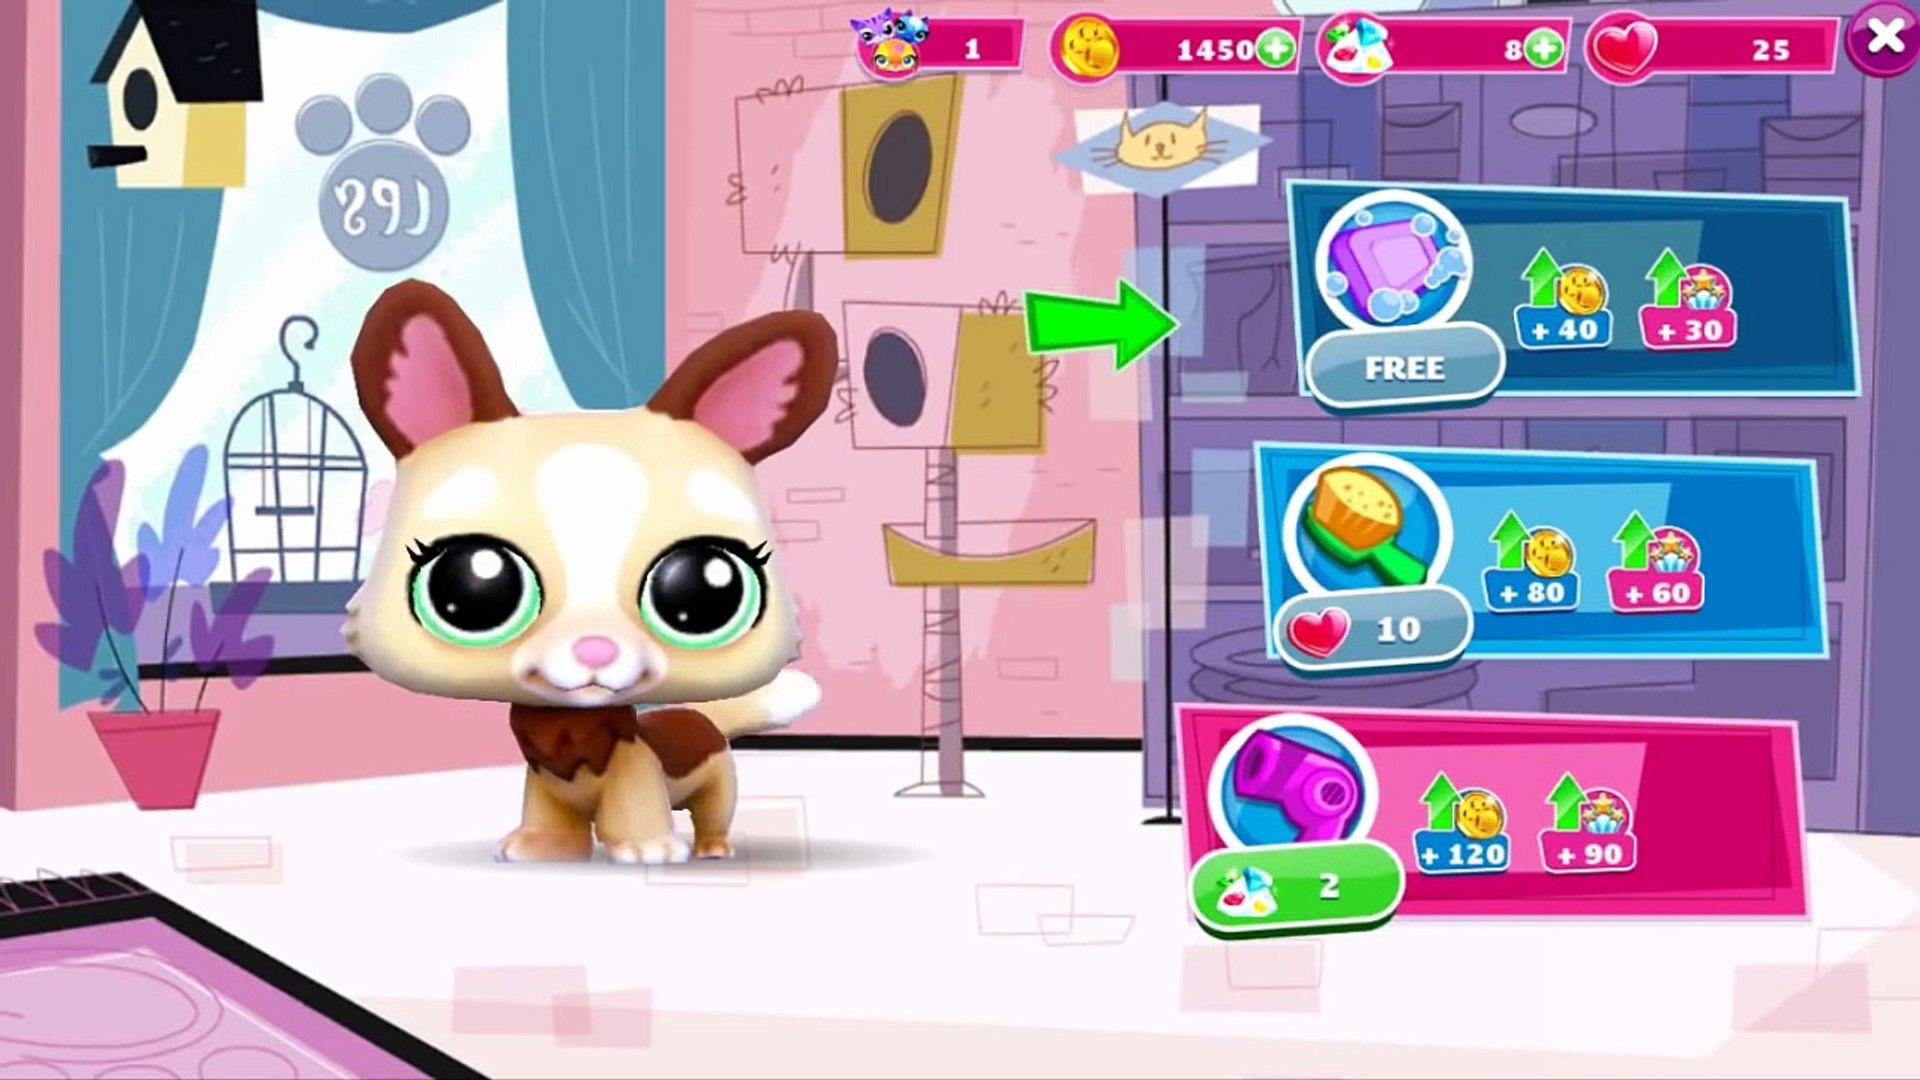 Pet shop video. Игра Littlest Pet shop Gameloft. Littlest Pet shop (Video game).